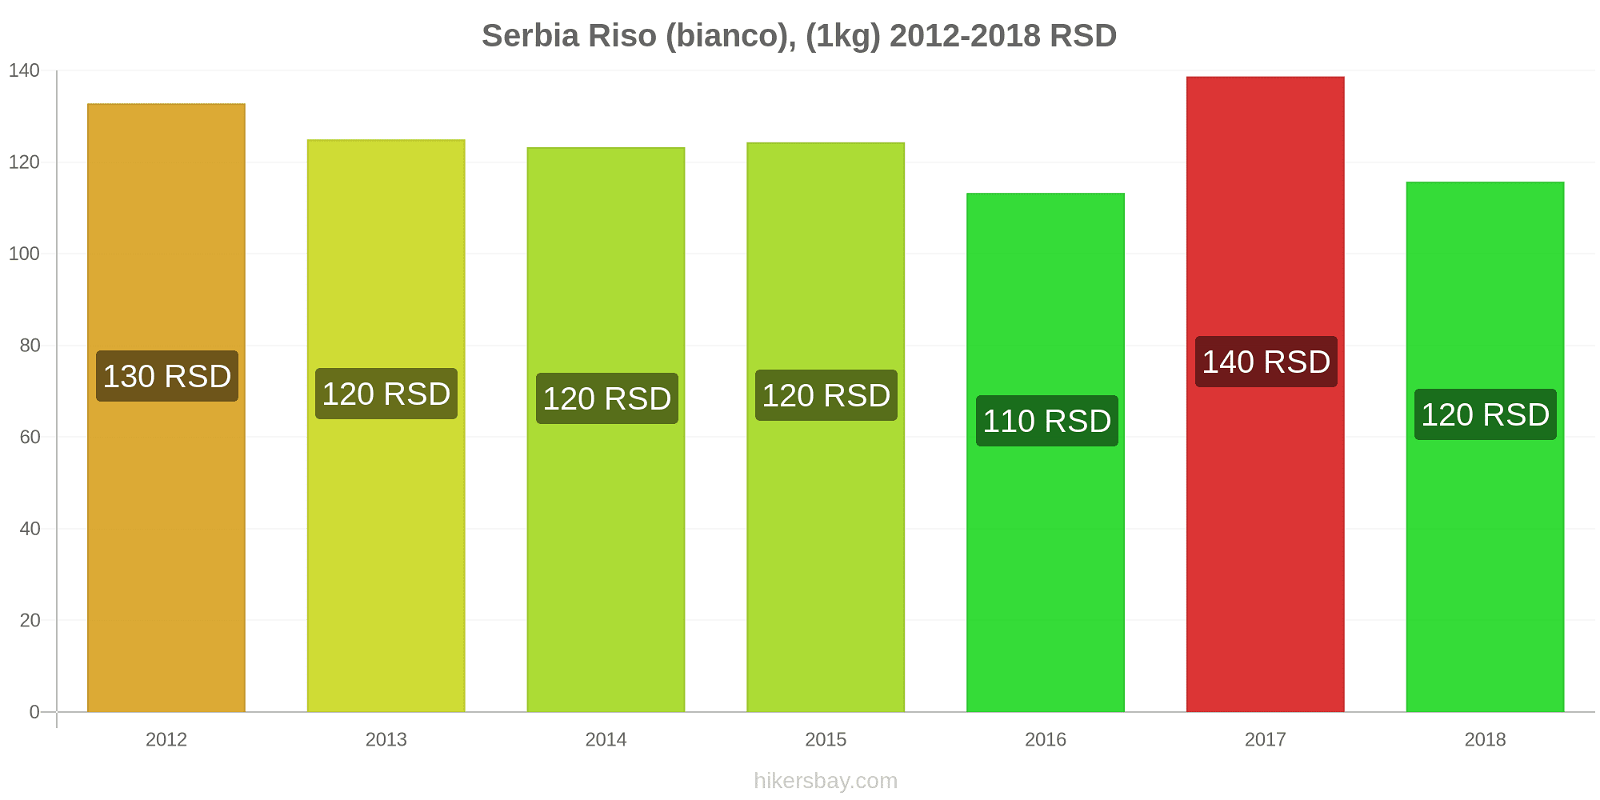 Serbia cambi di prezzo Chilo di riso bianco hikersbay.com